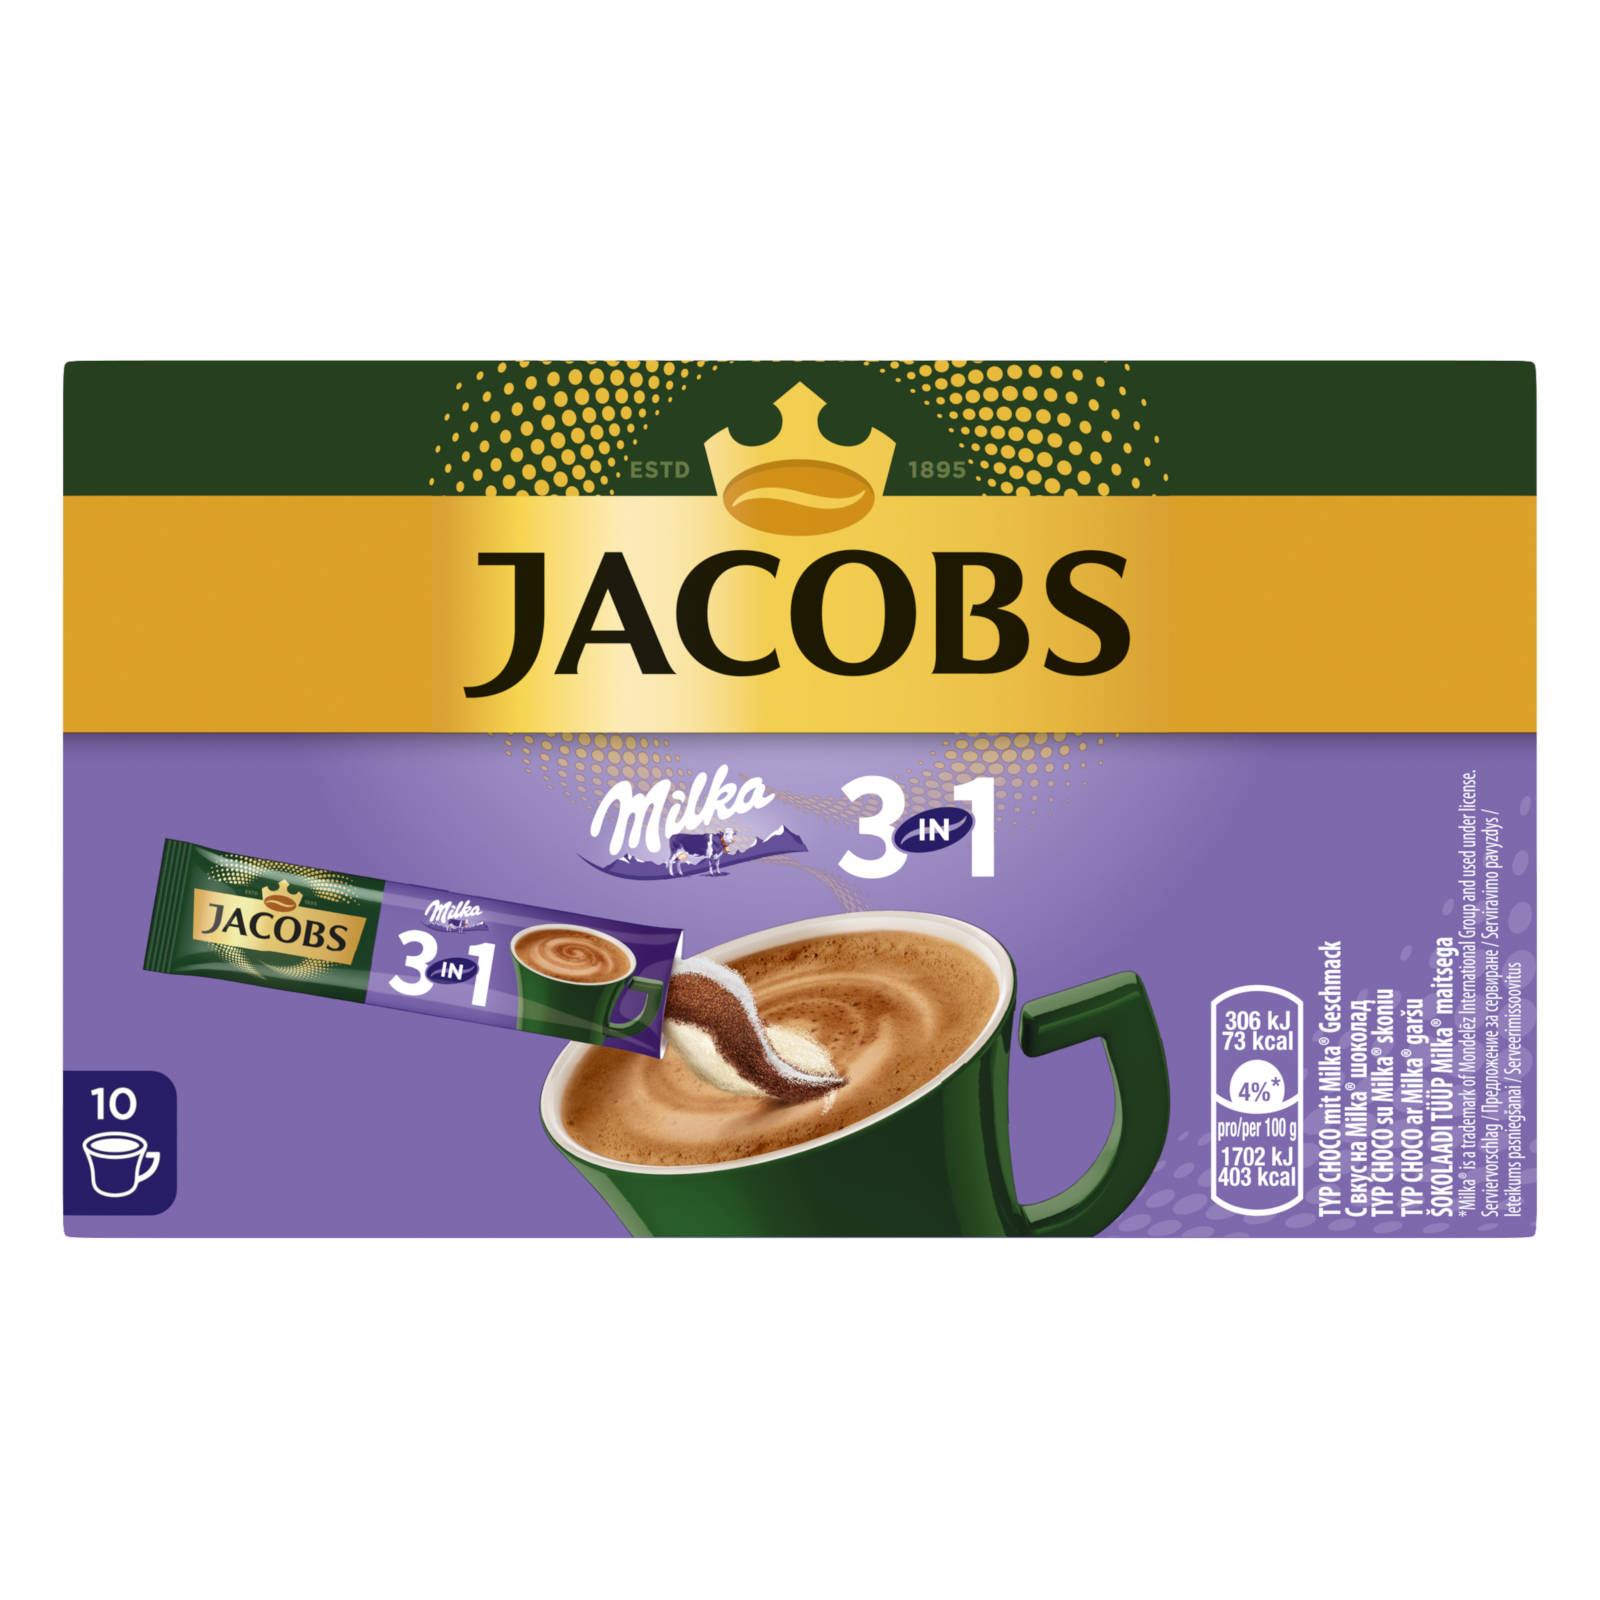 12 Getränke JACOBS Sticks 10 auflösen) x 3in1 Instantkaffee (In Wasser Milka®* heißem